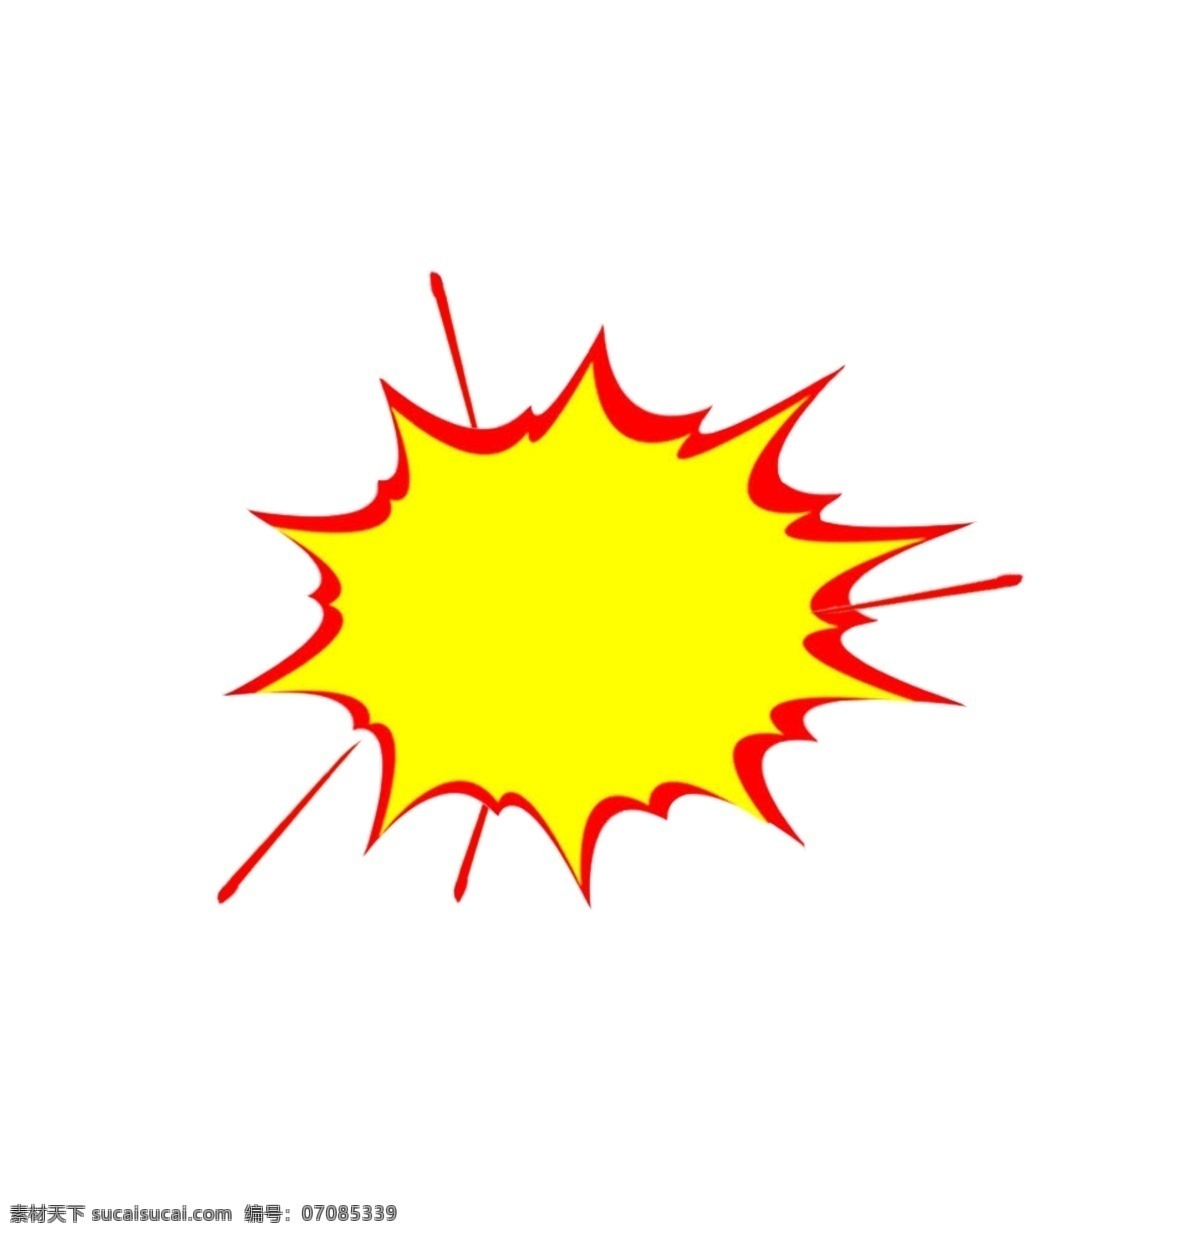 卡通爆炸图标 爆炸标贴 底纹边框 爆炸线 矢量图 手绘 矢量边框 黄色 红色